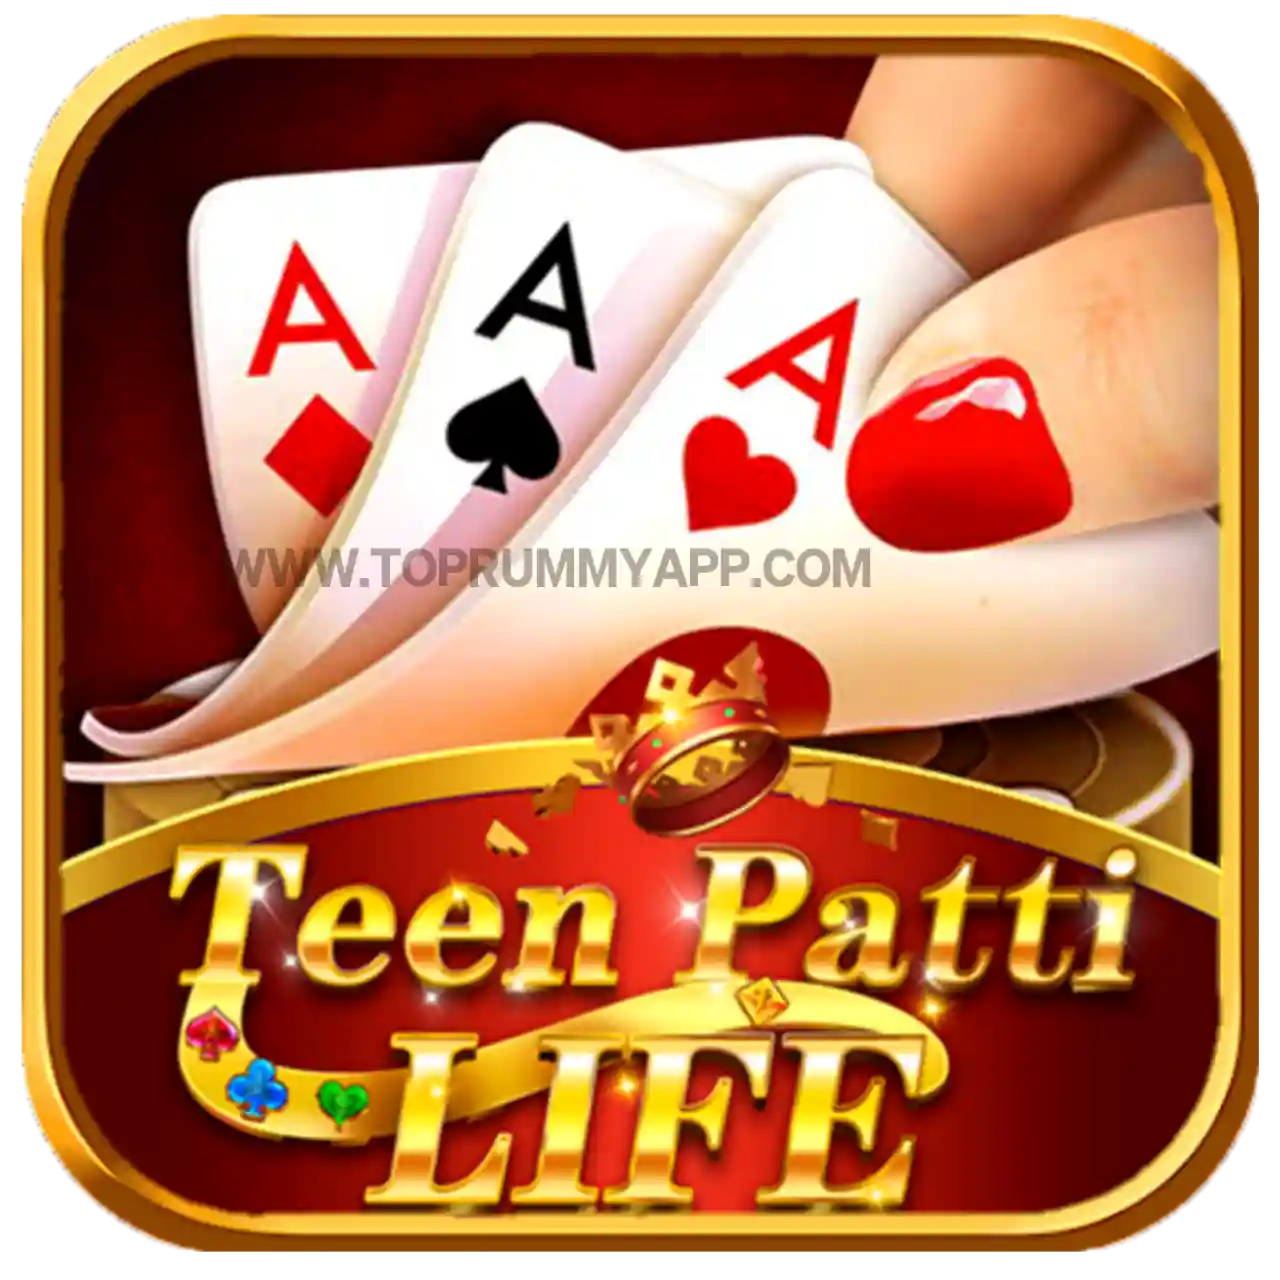 Teen Patti Life Apk Download - Top 10 Teen Patti App List